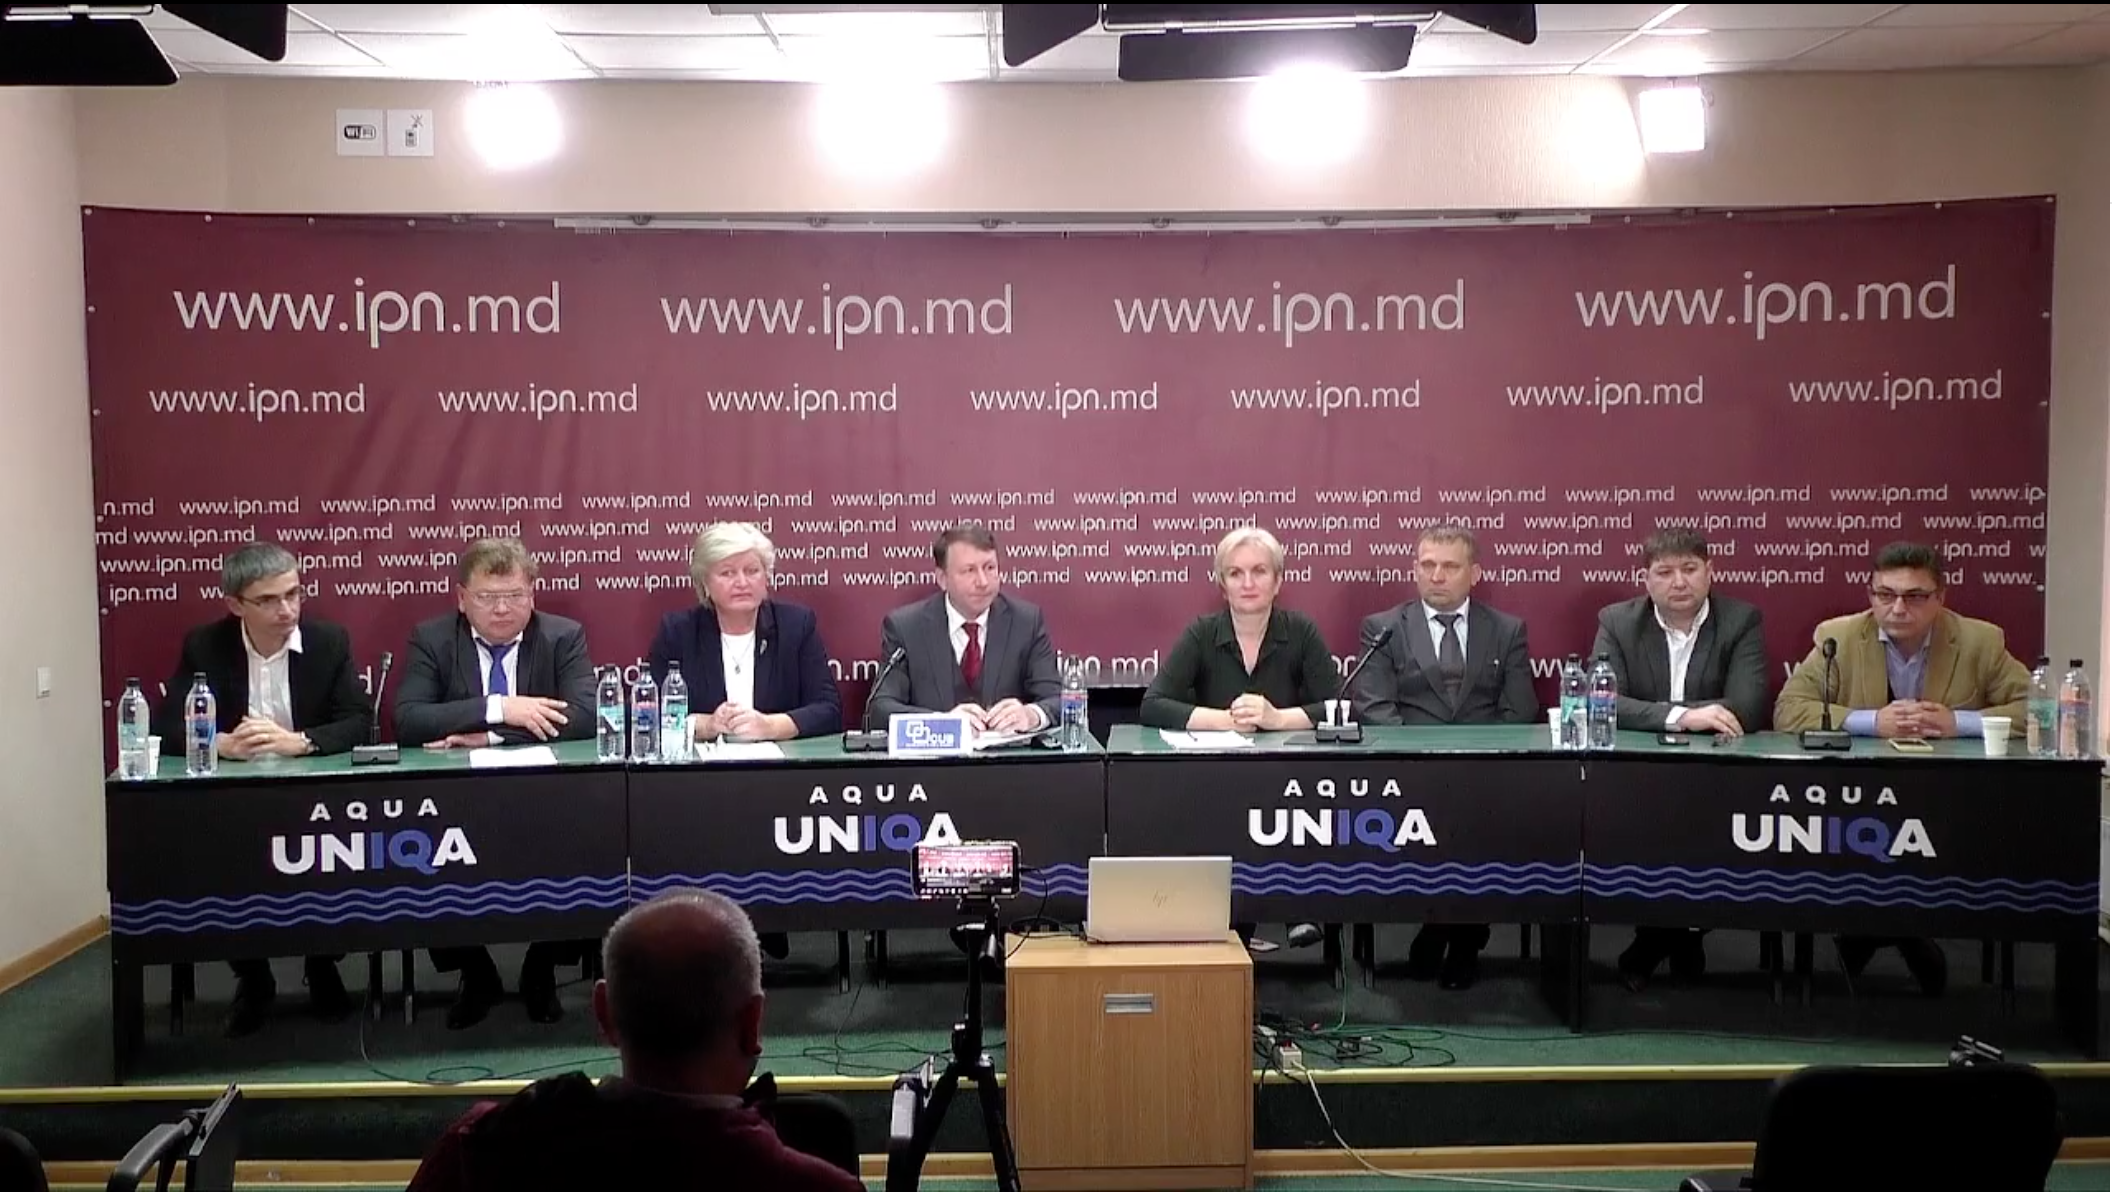 Video//A fost lansat un partid unionist în R.Moldova. Va crea spații comune integrate cu România